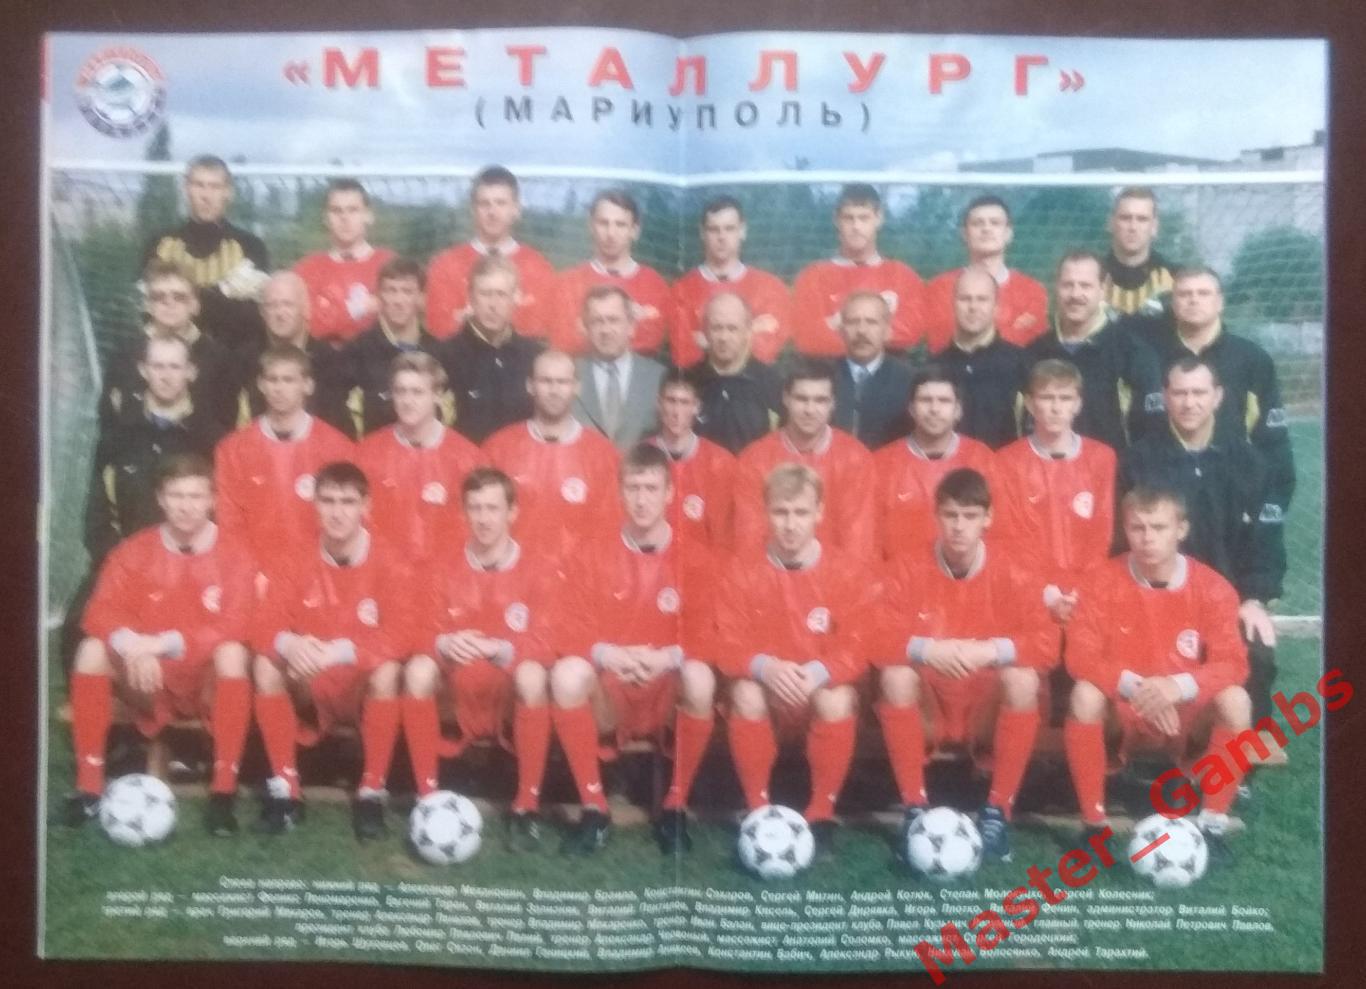 Журнал Футбол интер # 8 (22) 1999 (Металлург Мариуполь) 2